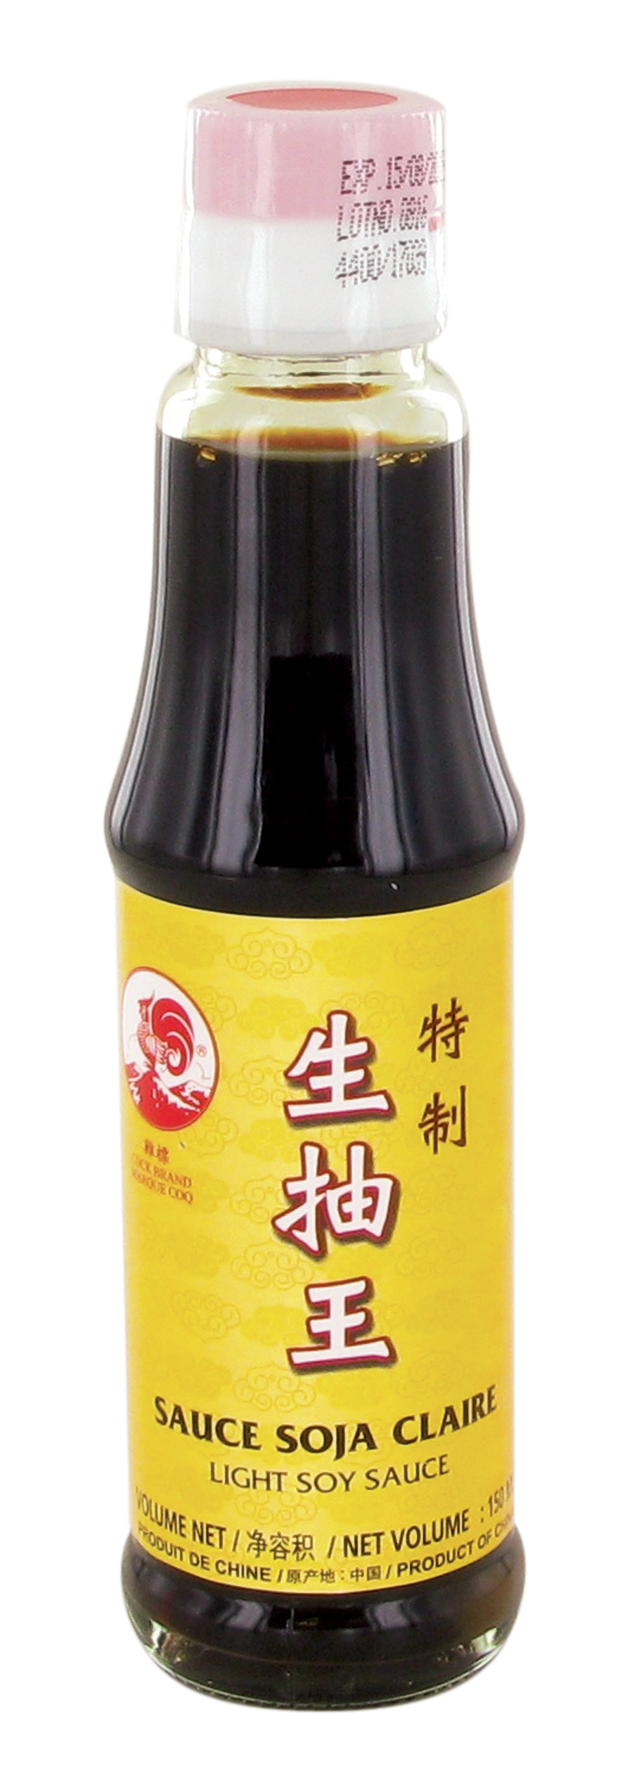 Sauce soja claire (生抽王) COCK - Épicerie sucrée et salée, Sauces